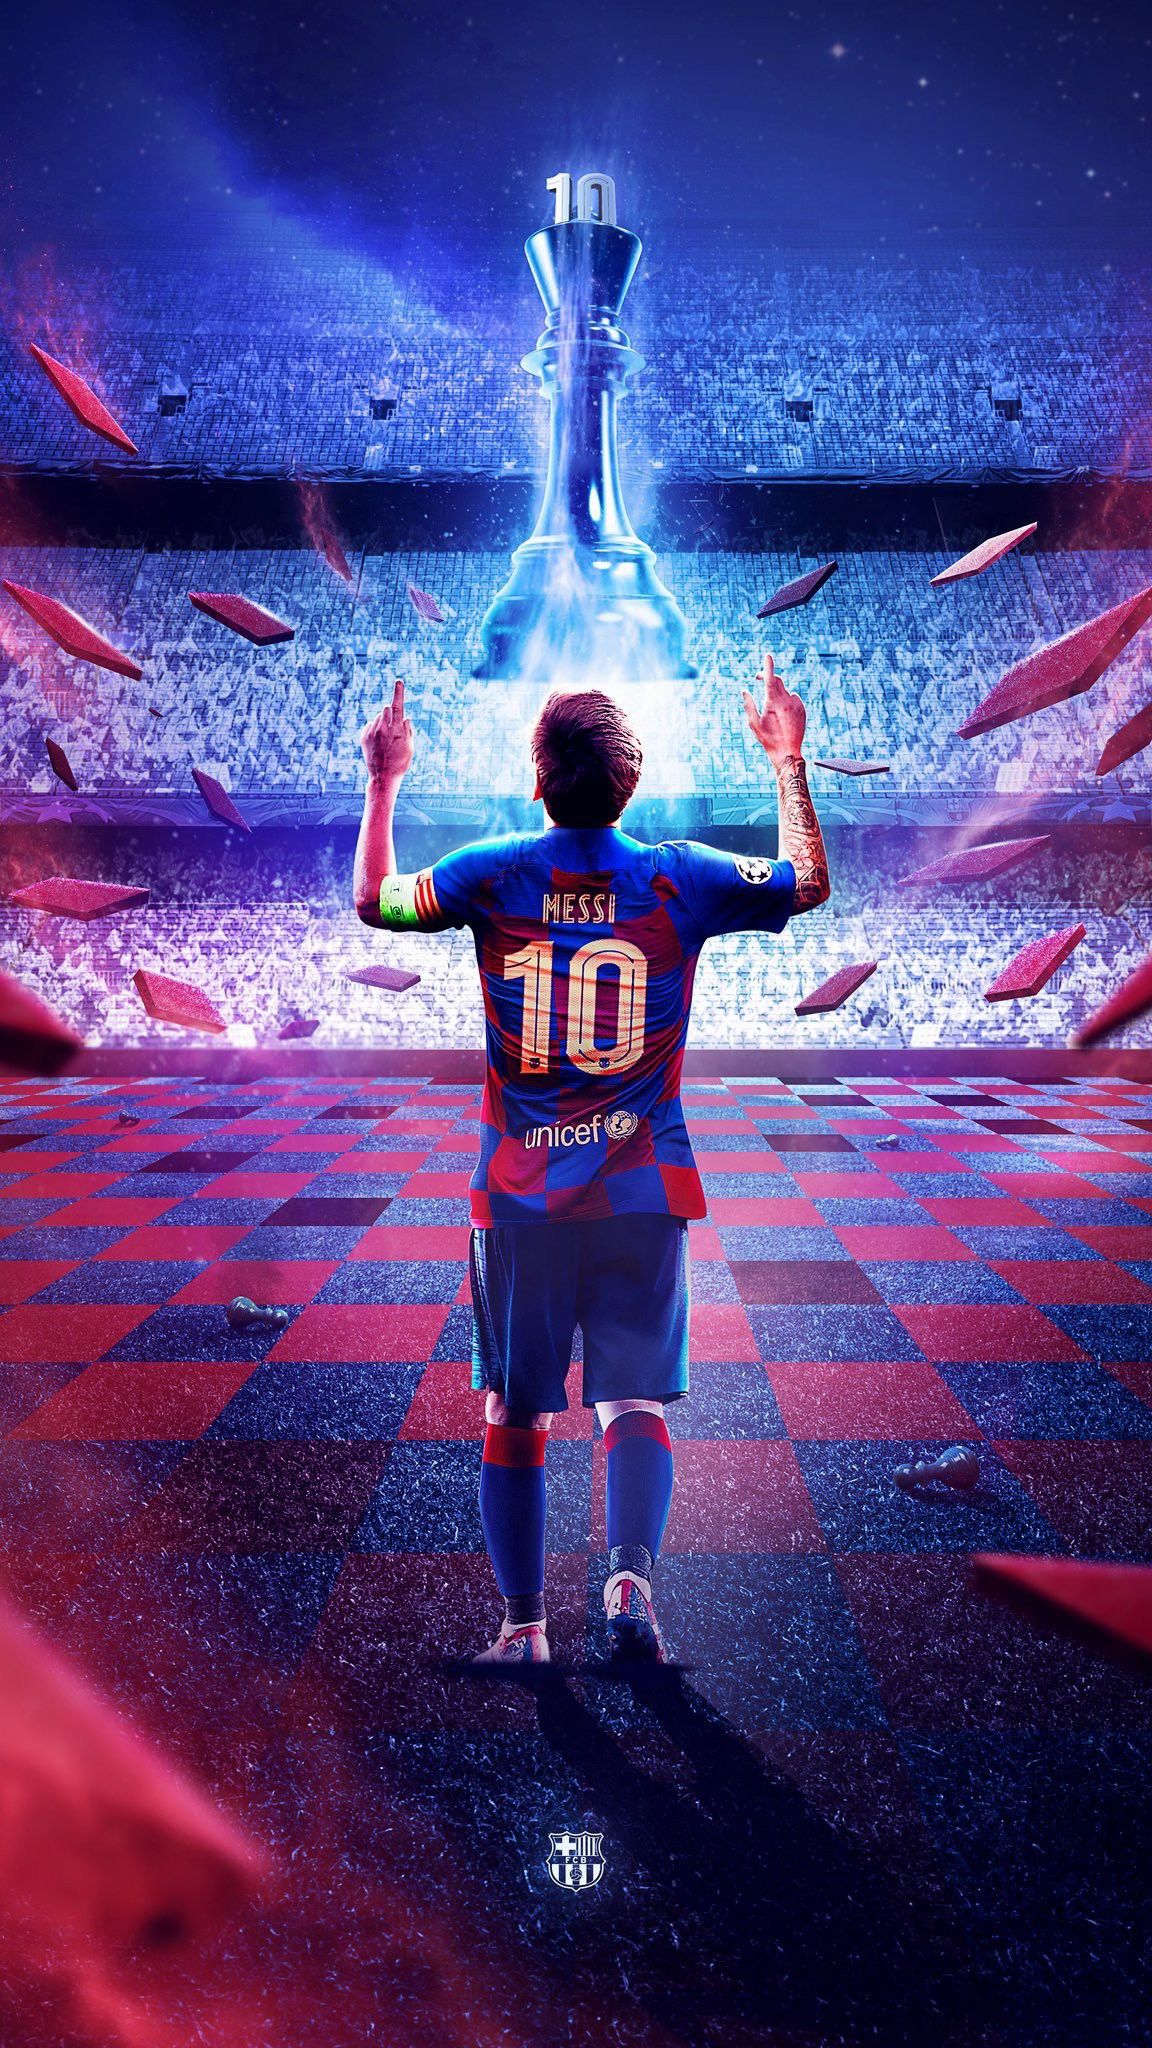 Bạn là fan của Barcelona và Messi? Hãy ngắm nhìn hình nền điện thoại Messi Barcelona đầy đẳng cấp này - một bức tranh hoàn hảo cho những người yêu bóng đá. Chắc chắn sẽ giúp bạn thêm động lực và cảm hứng để đối mặt với mọi thách thức.